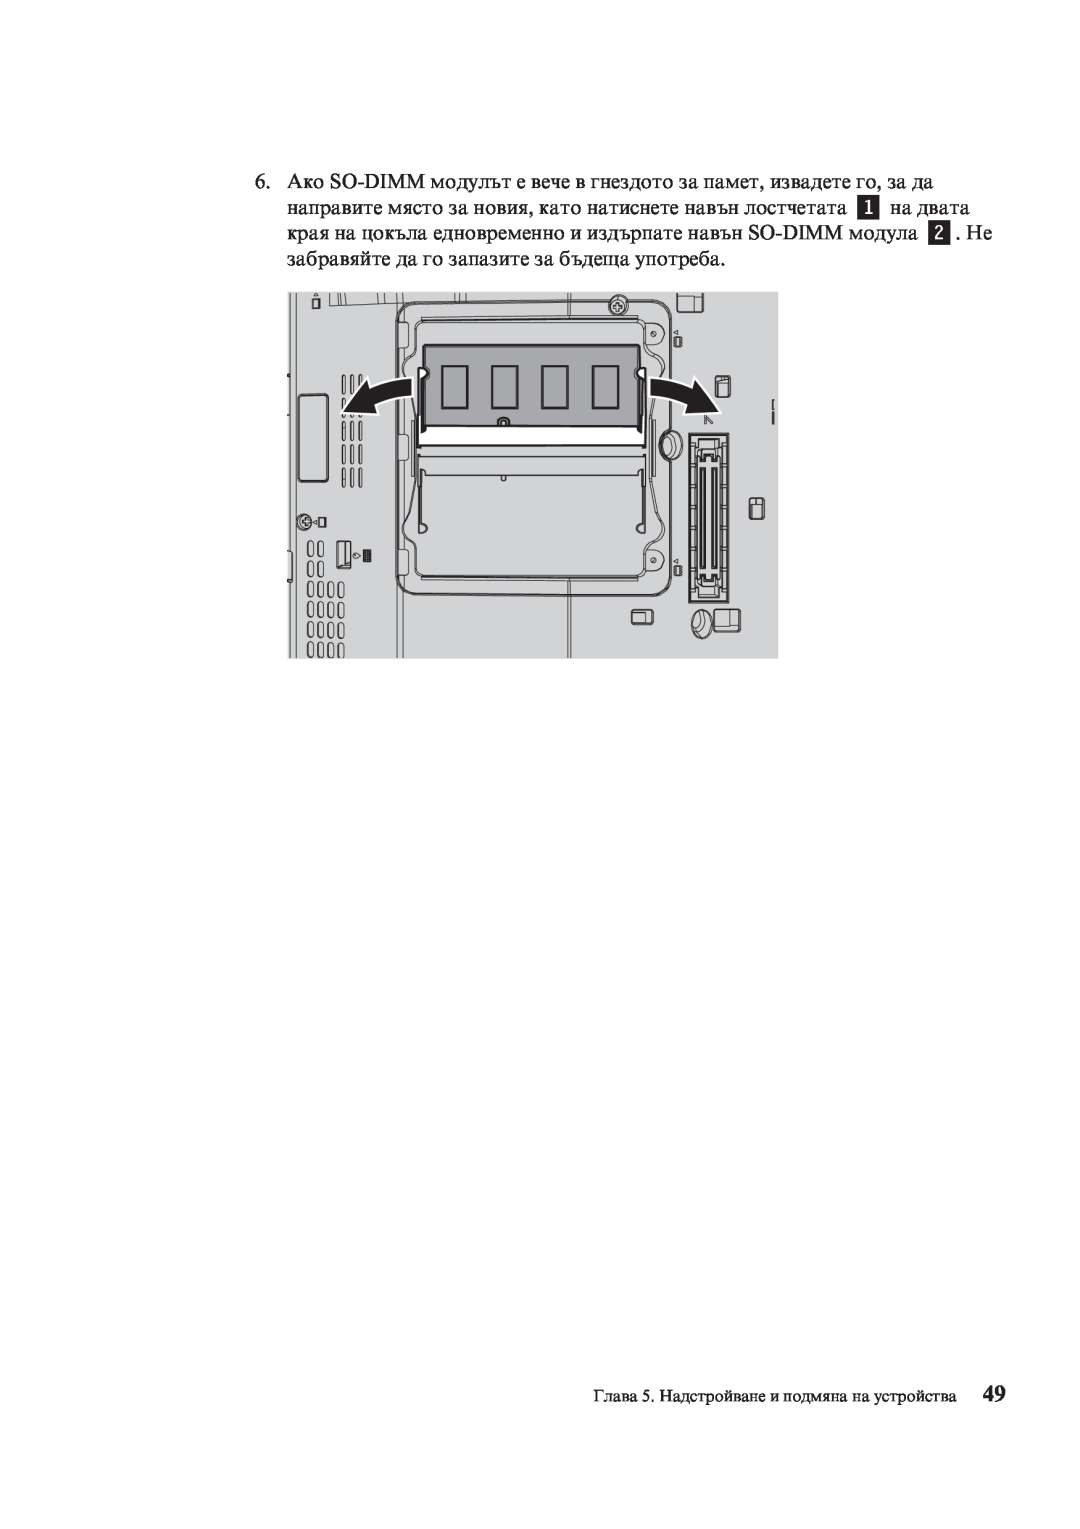 Lenovo X200 manual Глава 5. Надстройване и подмяна на устройства 